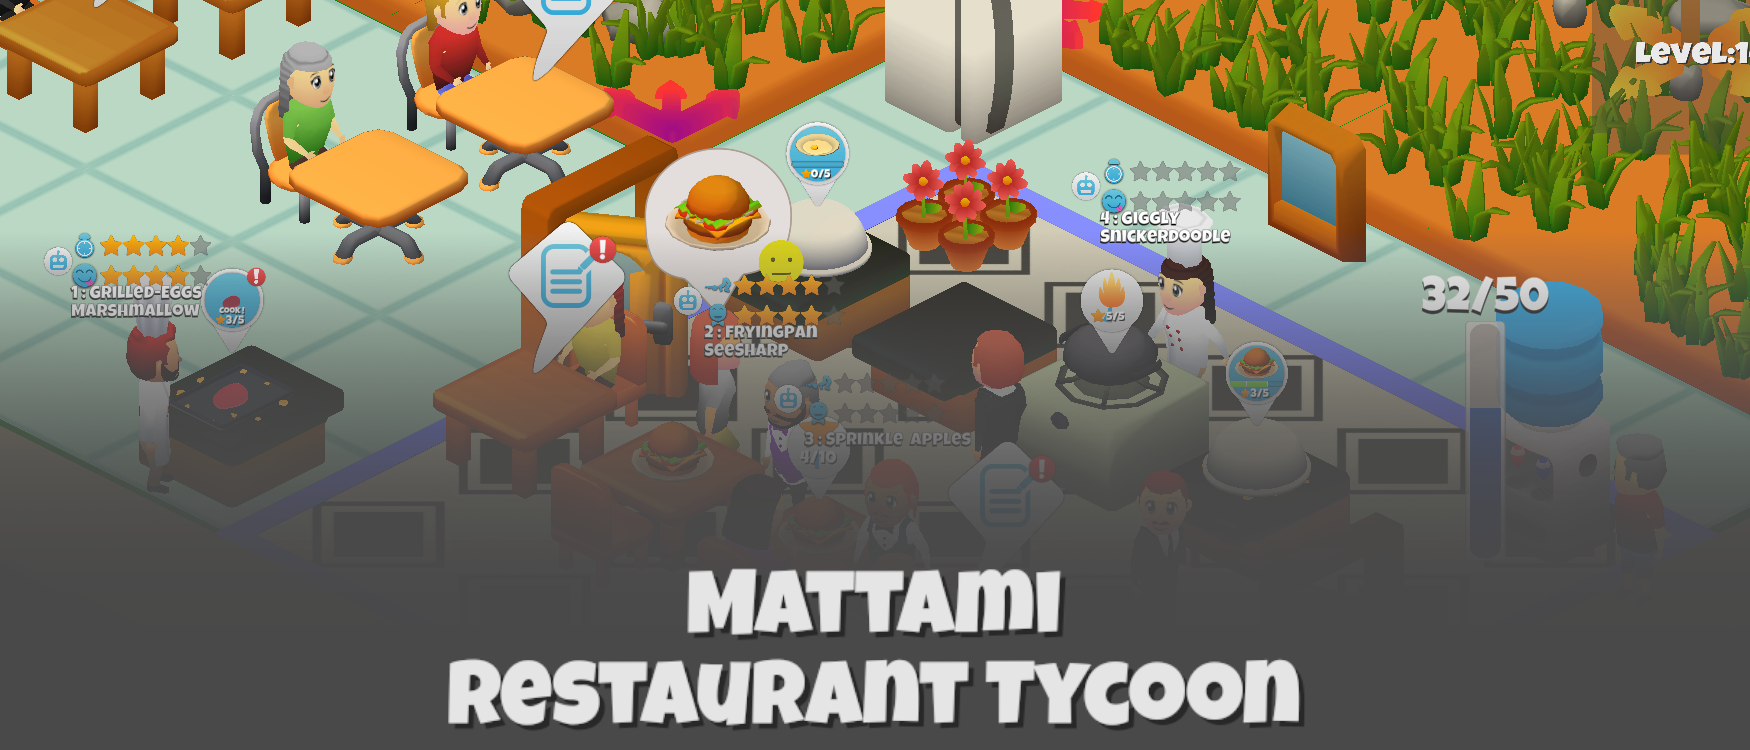 Restaurant Tycoon : Mattami